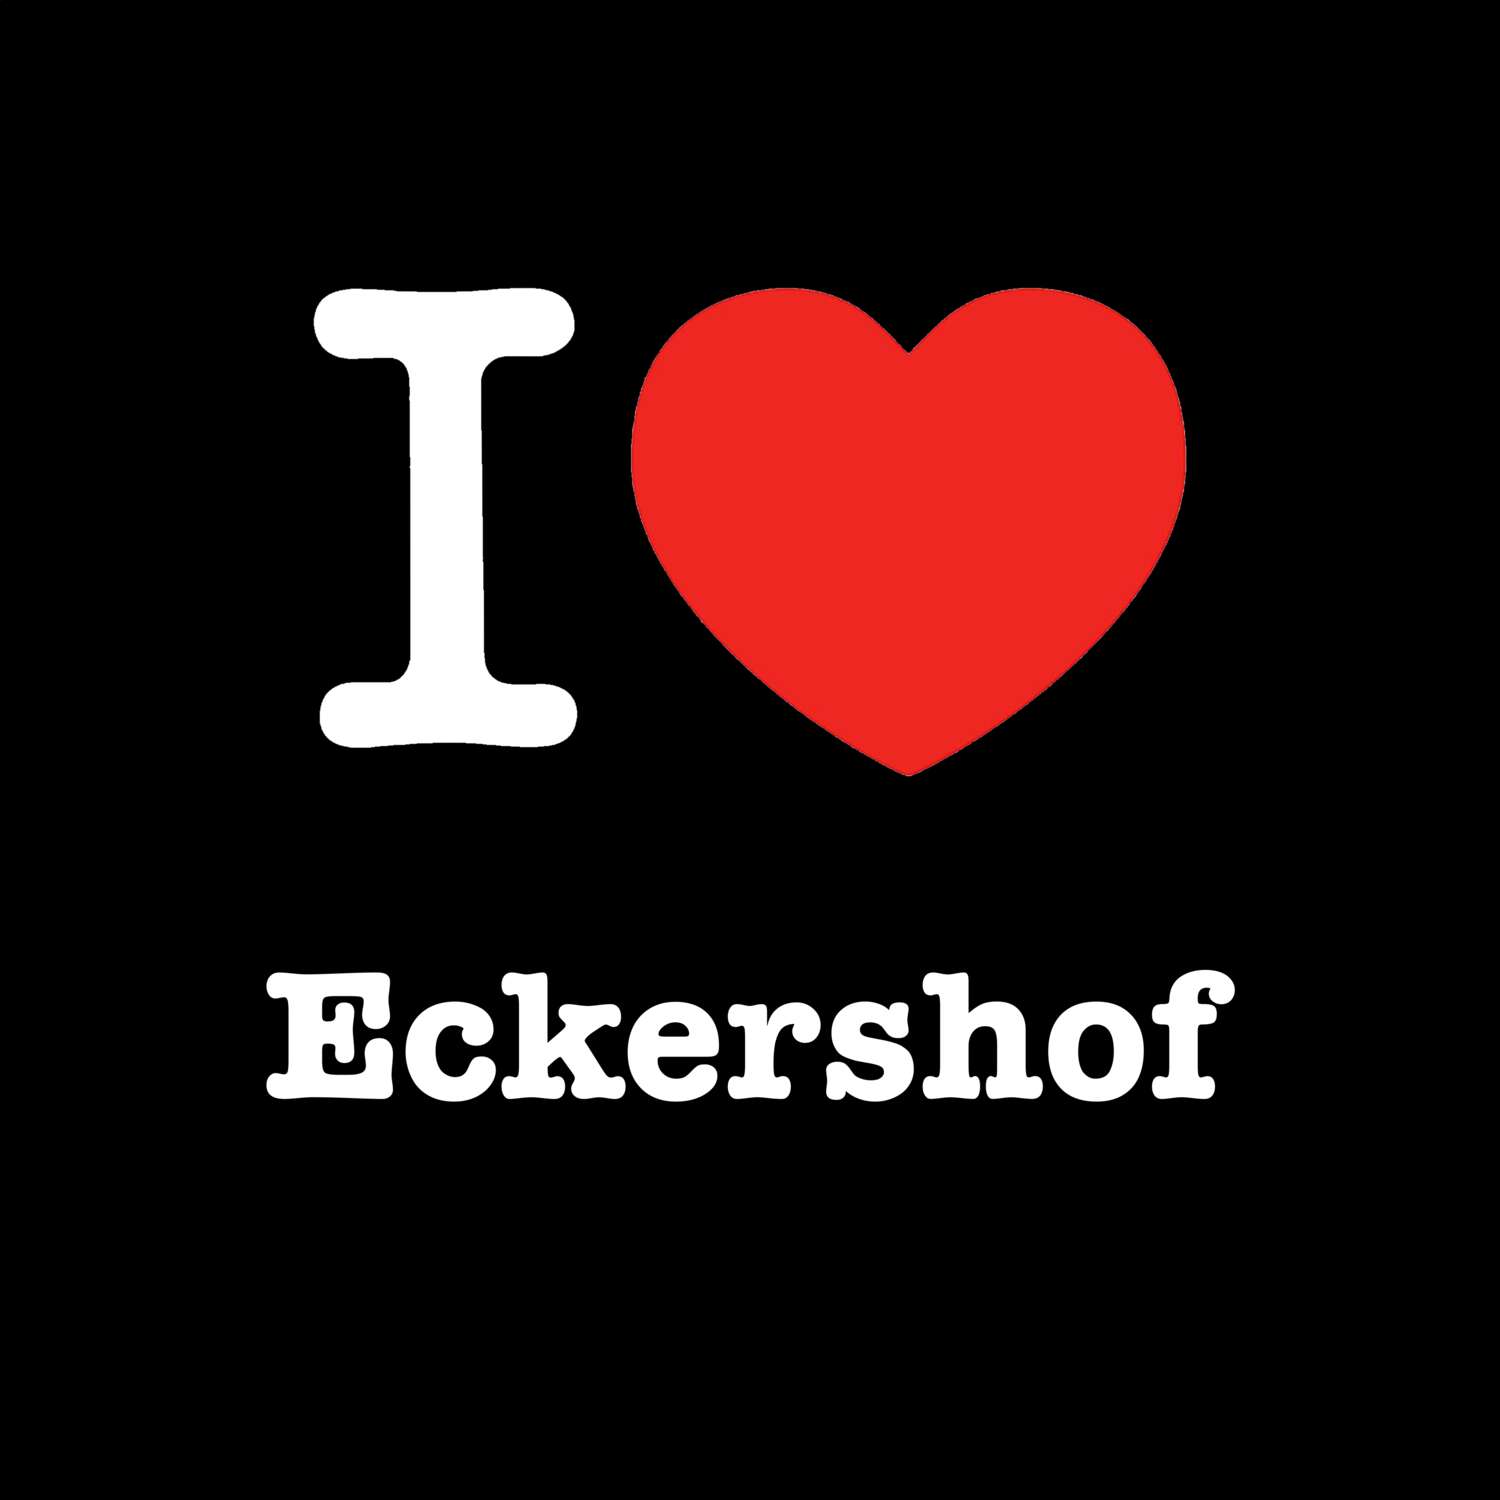 Eckershof T-Shirt »I love«